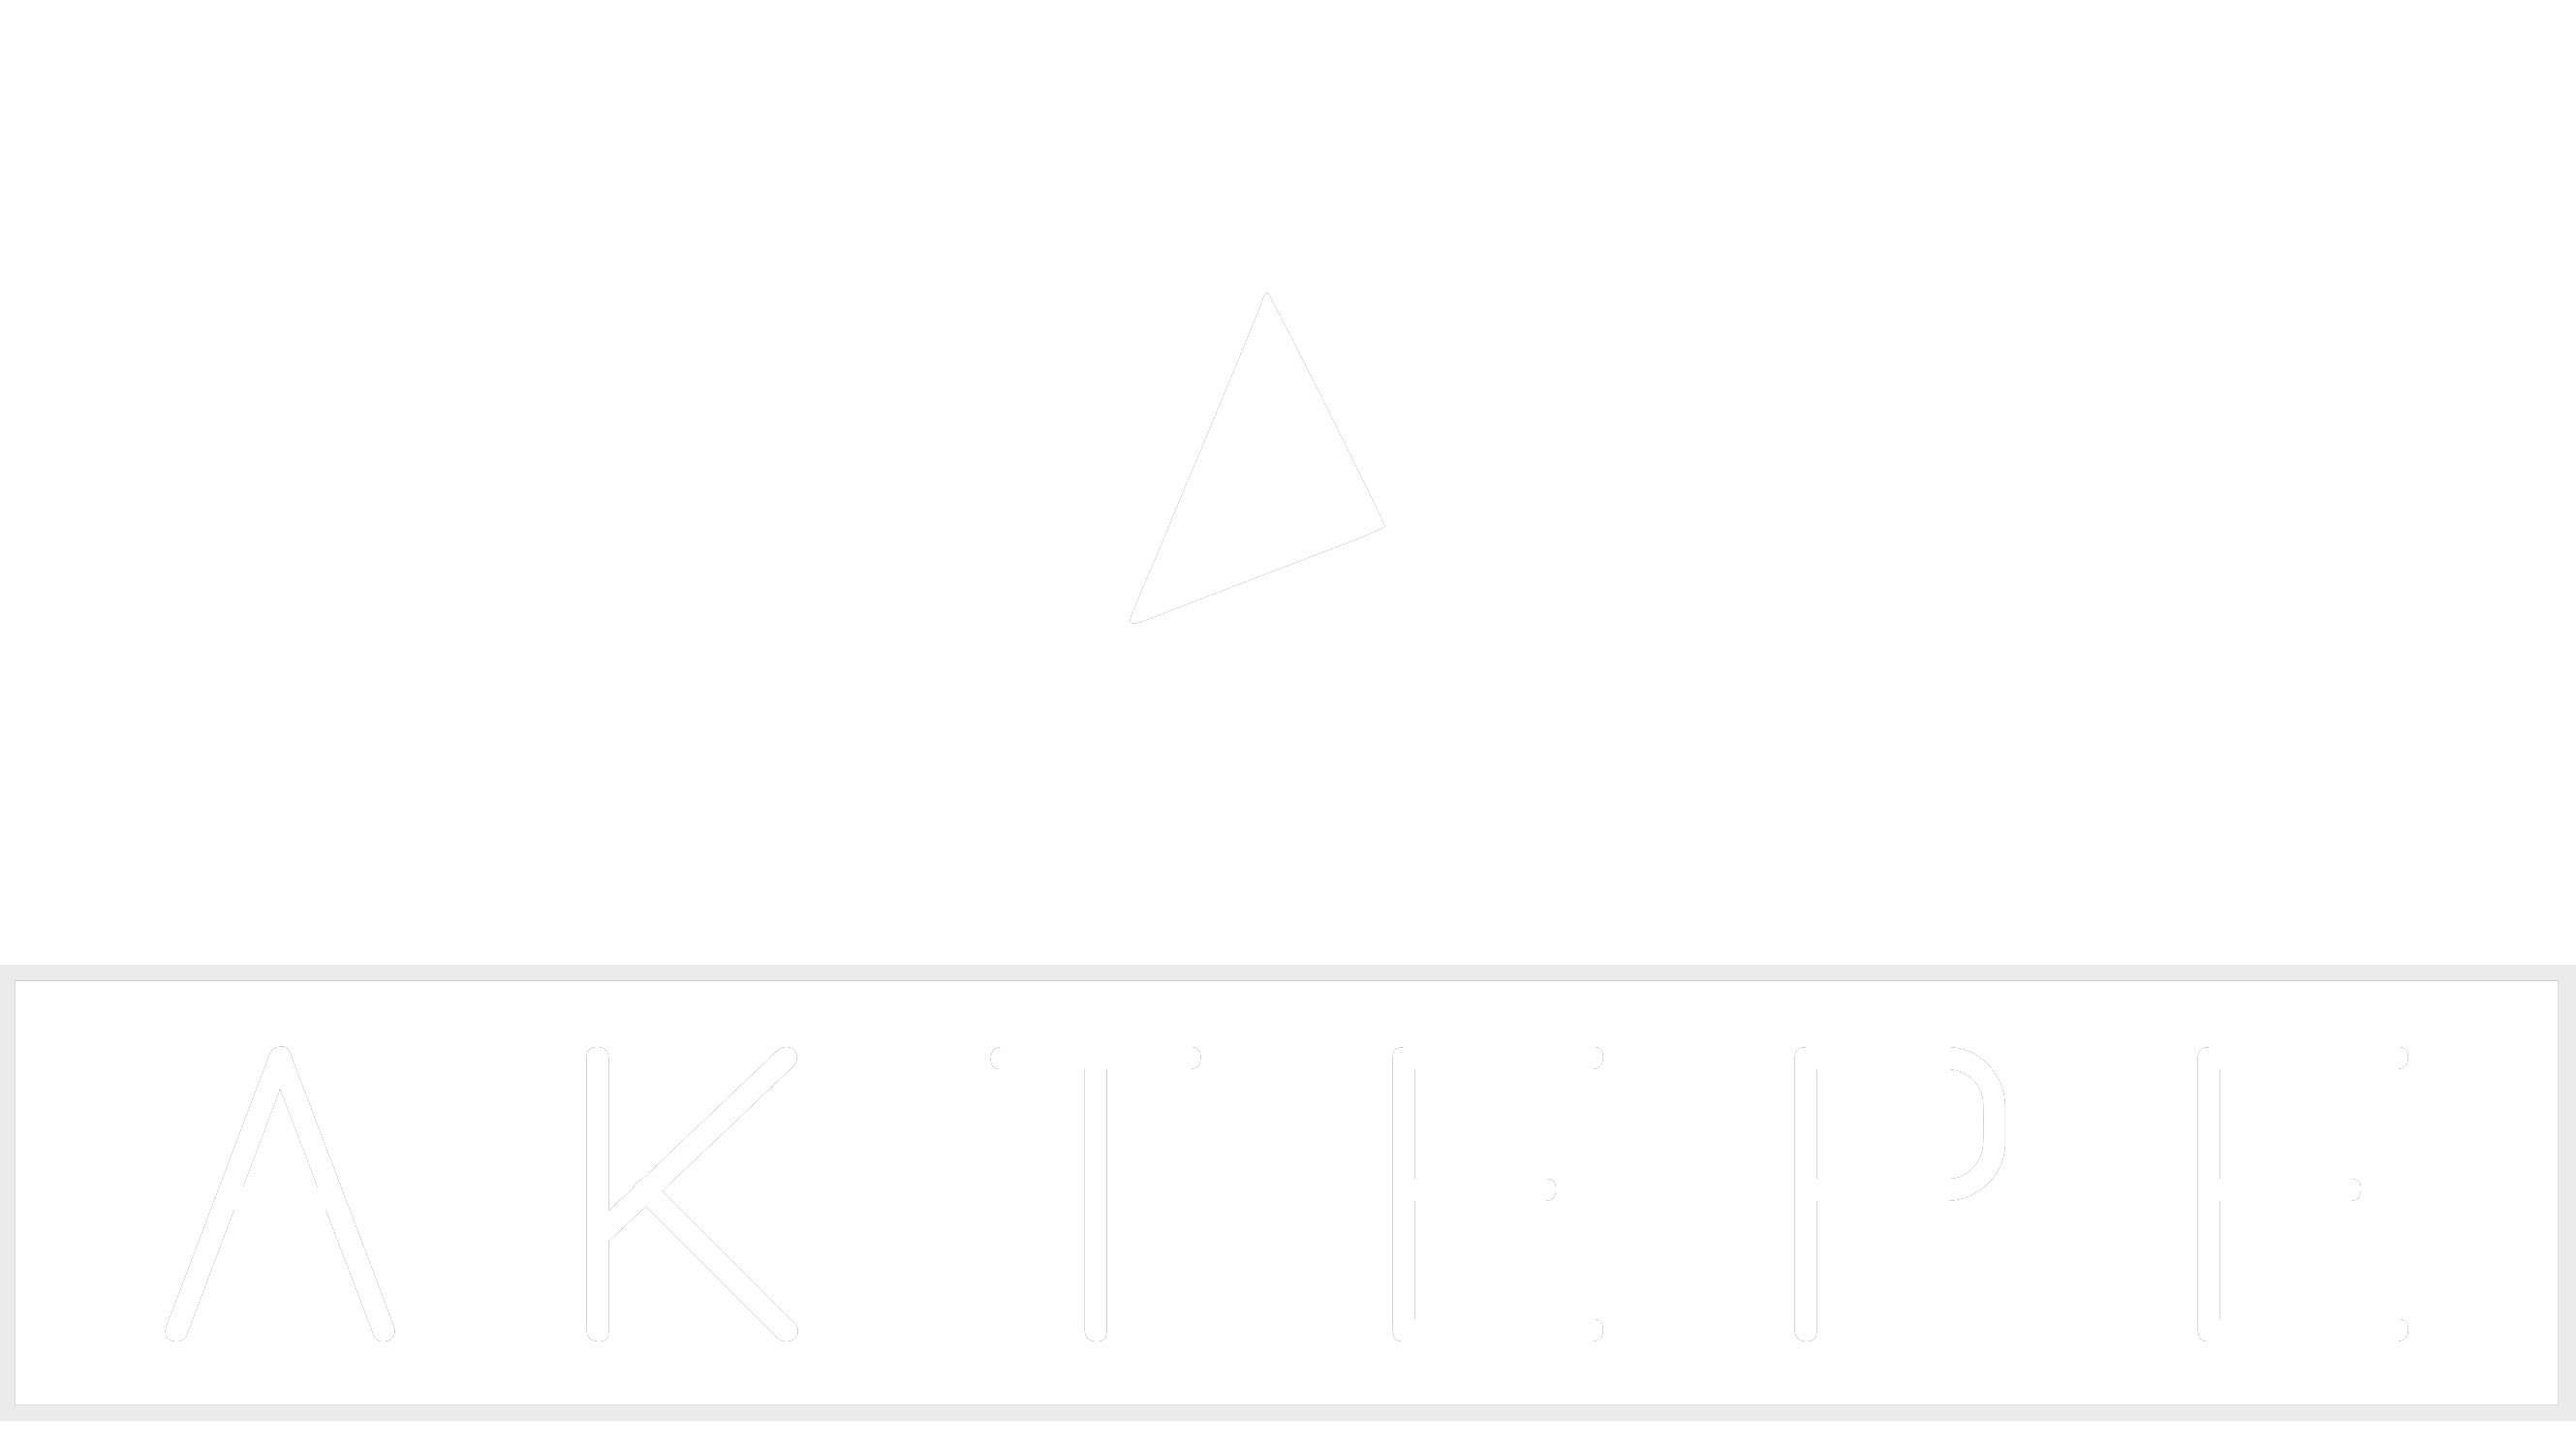 Super B - Aktepe Shop - Oto Müzik Görüntü Navigasyon Sistemleri ve Teyp Çerçevesi Satış Merkezi